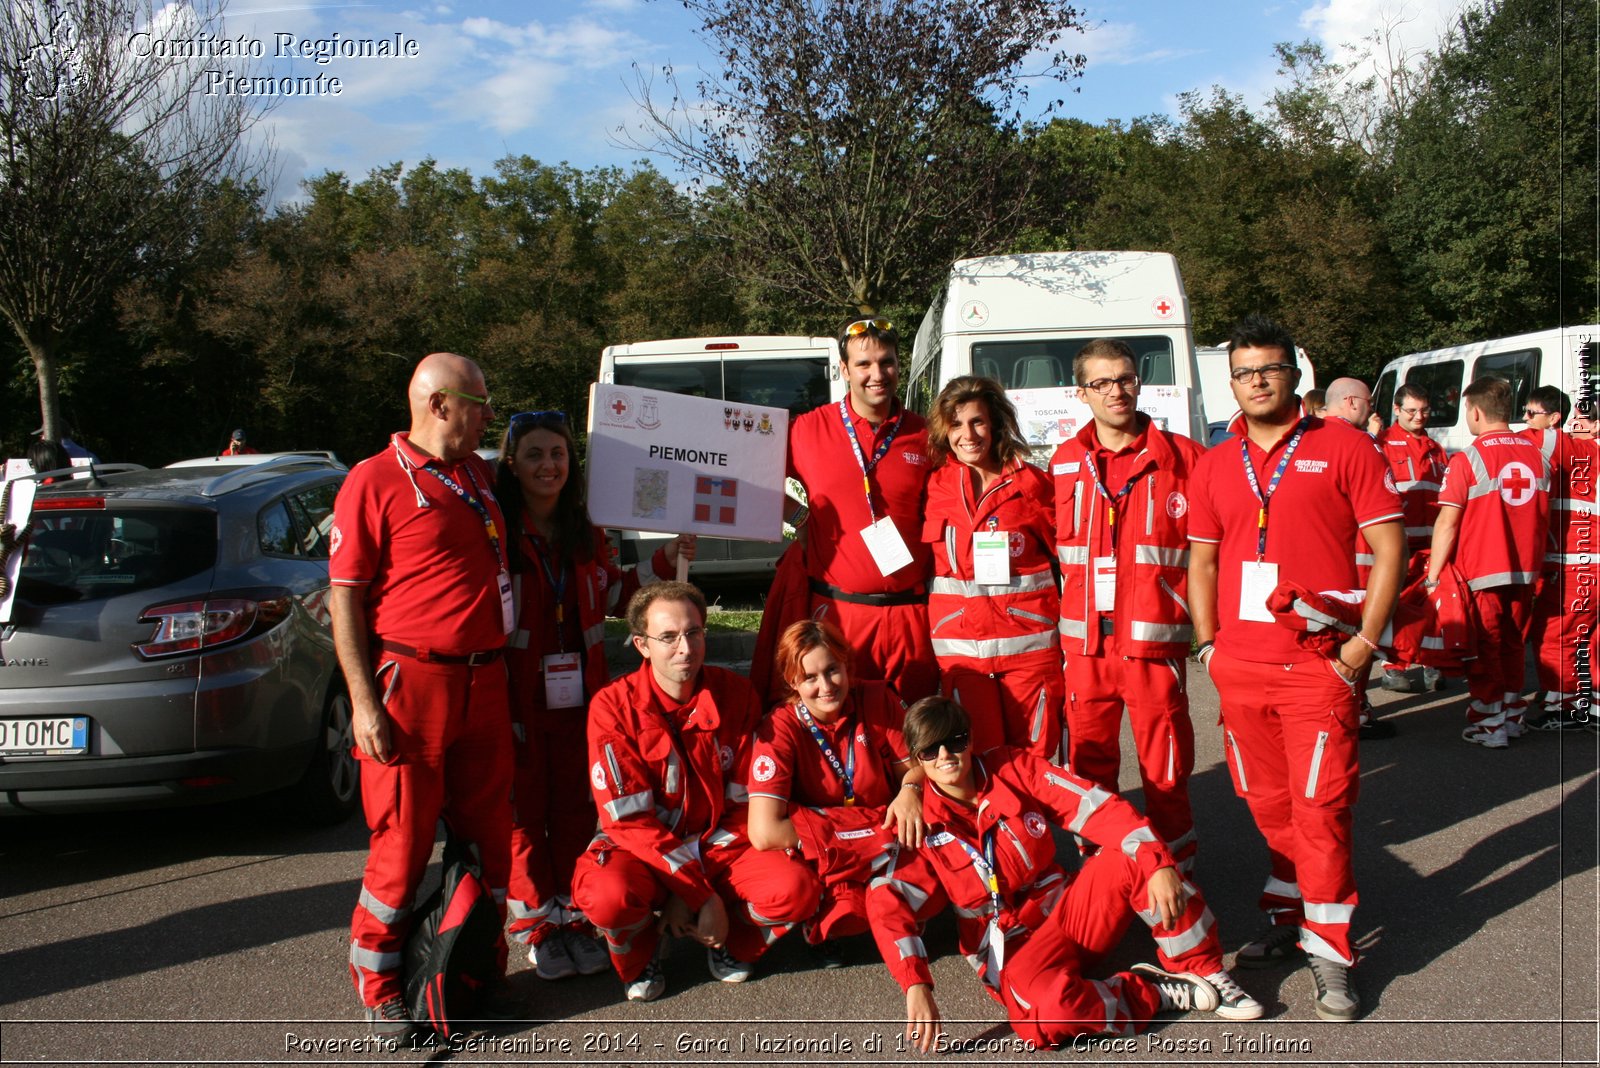 Rovereto 14 Settembre 2014 - Gara Nazionale di 1 Soccorso - Croce Rossa Italiana- Comitato Regionale del Piemonte